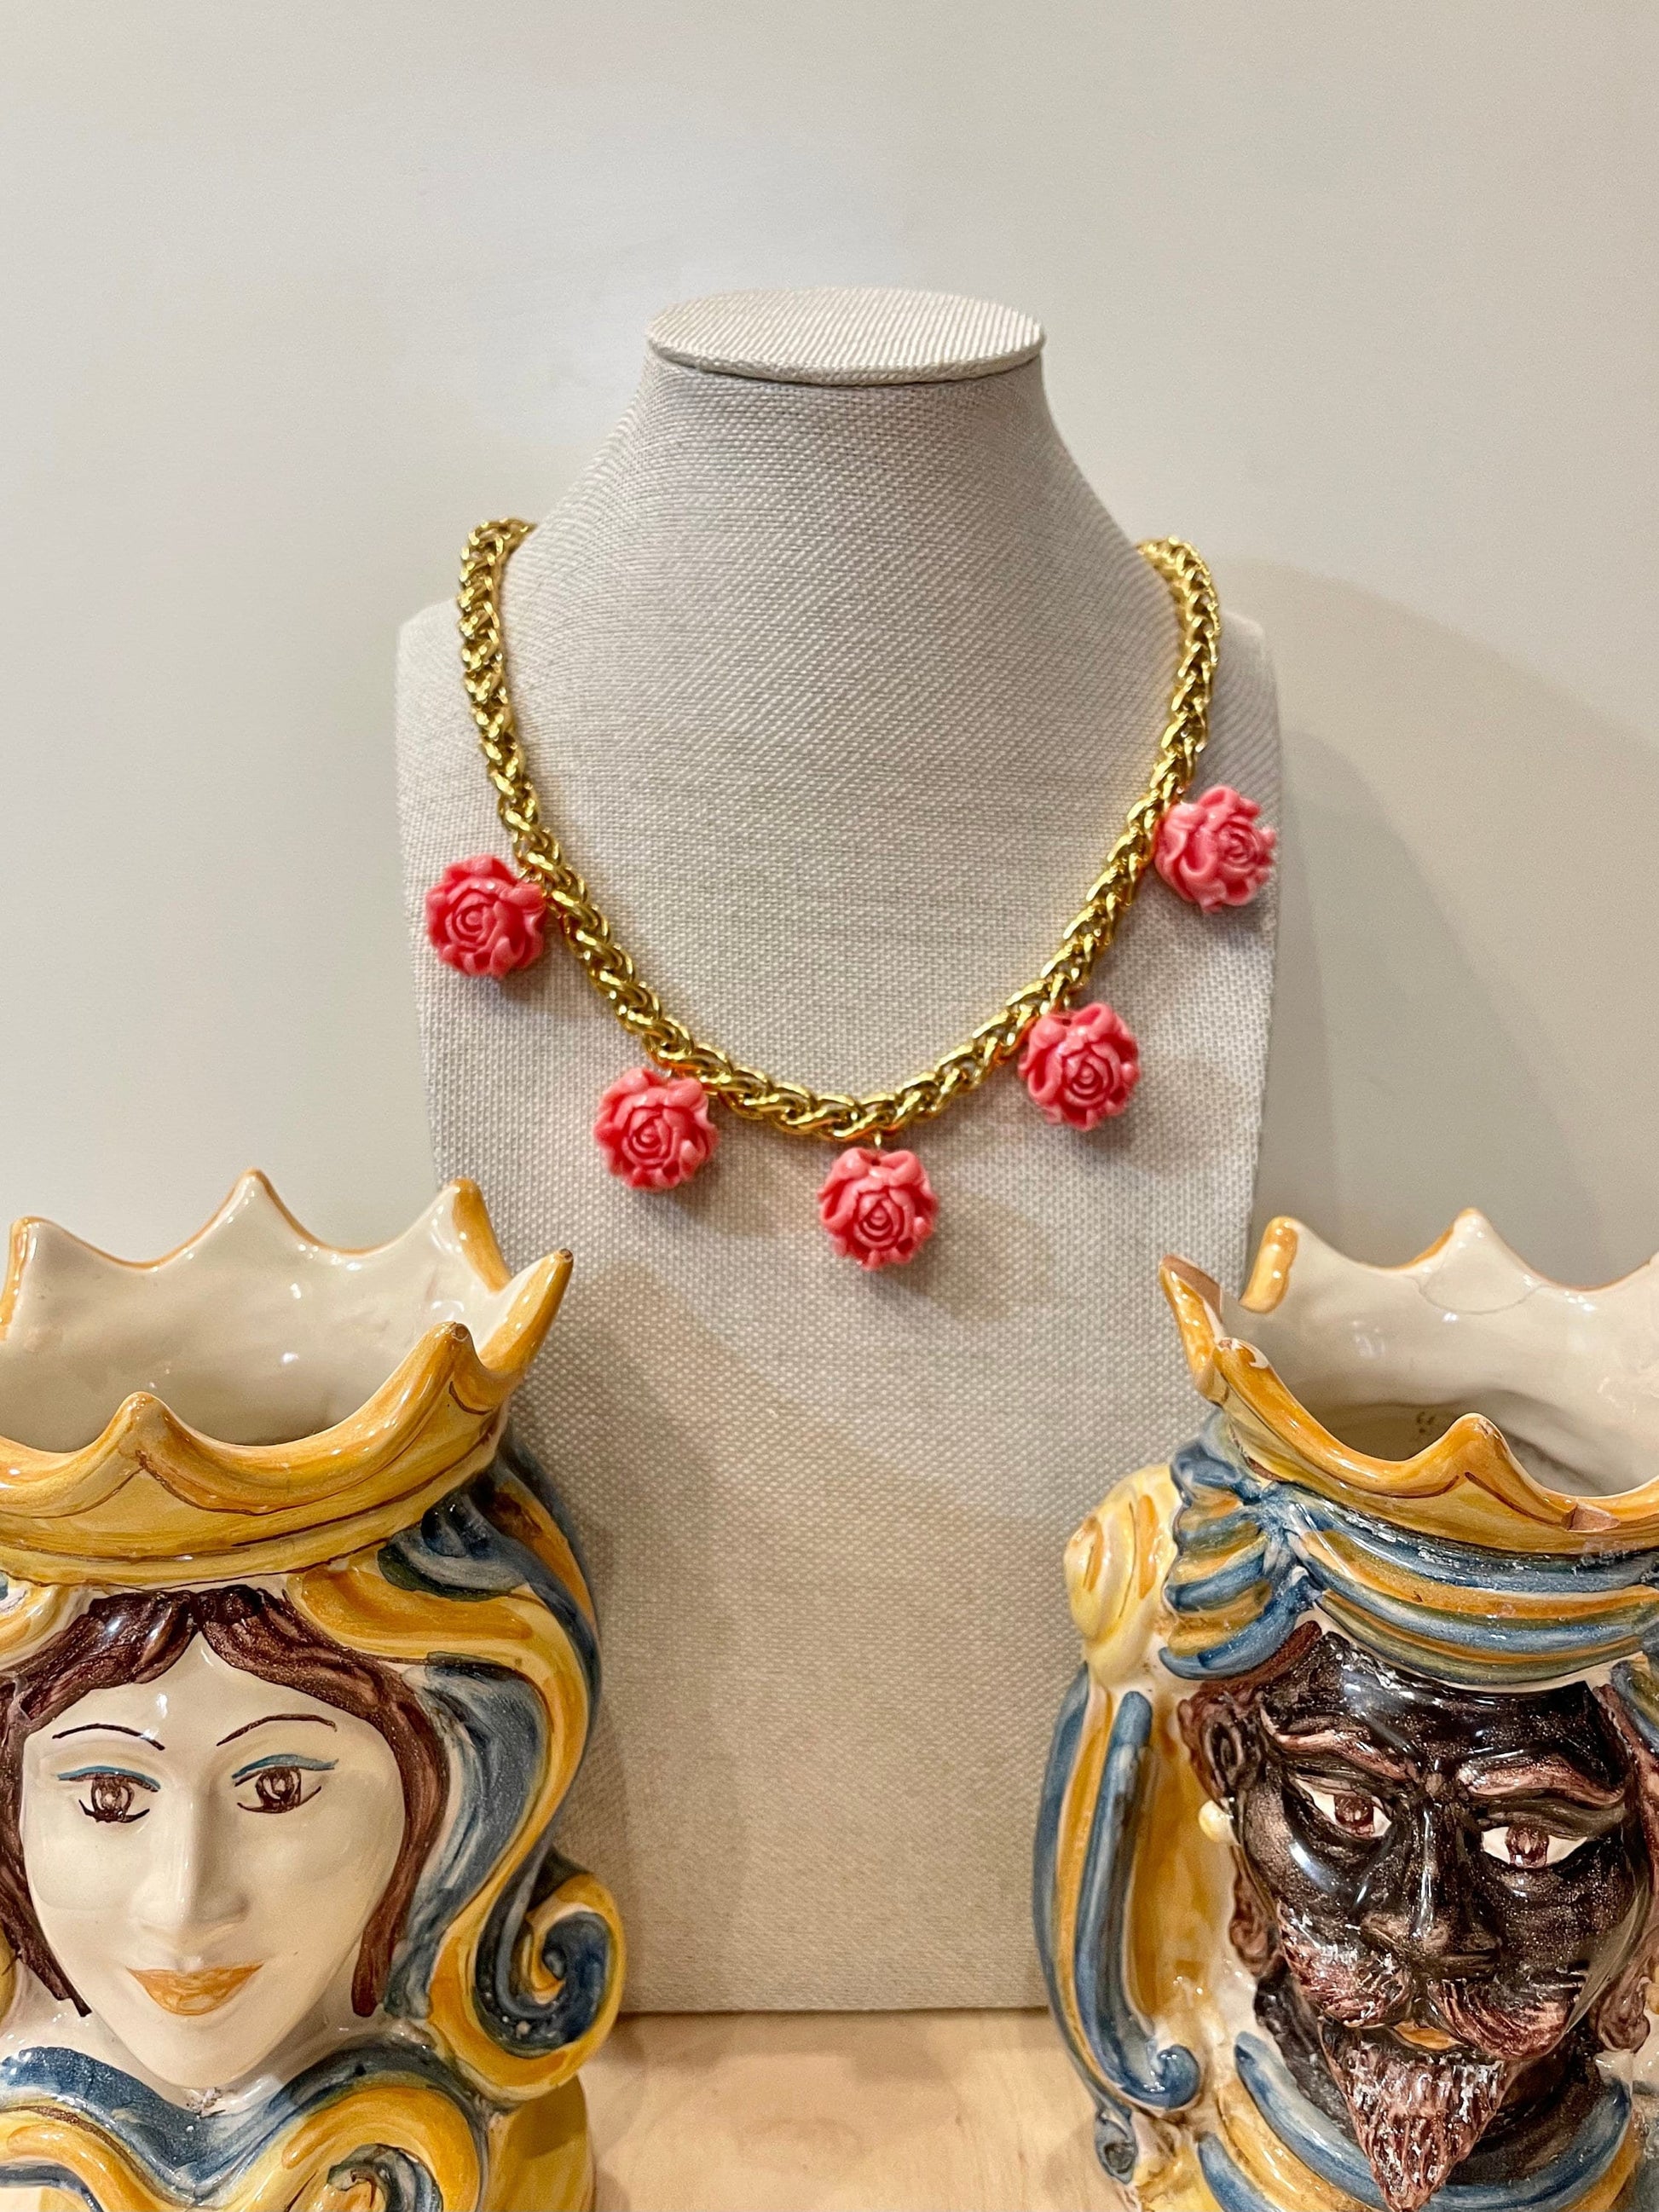 Collana girocollo, con catena a maglia grossa, catena acciaio placcata oro 14k, chocker, 5 pendenti rose in pasta di corallo.=